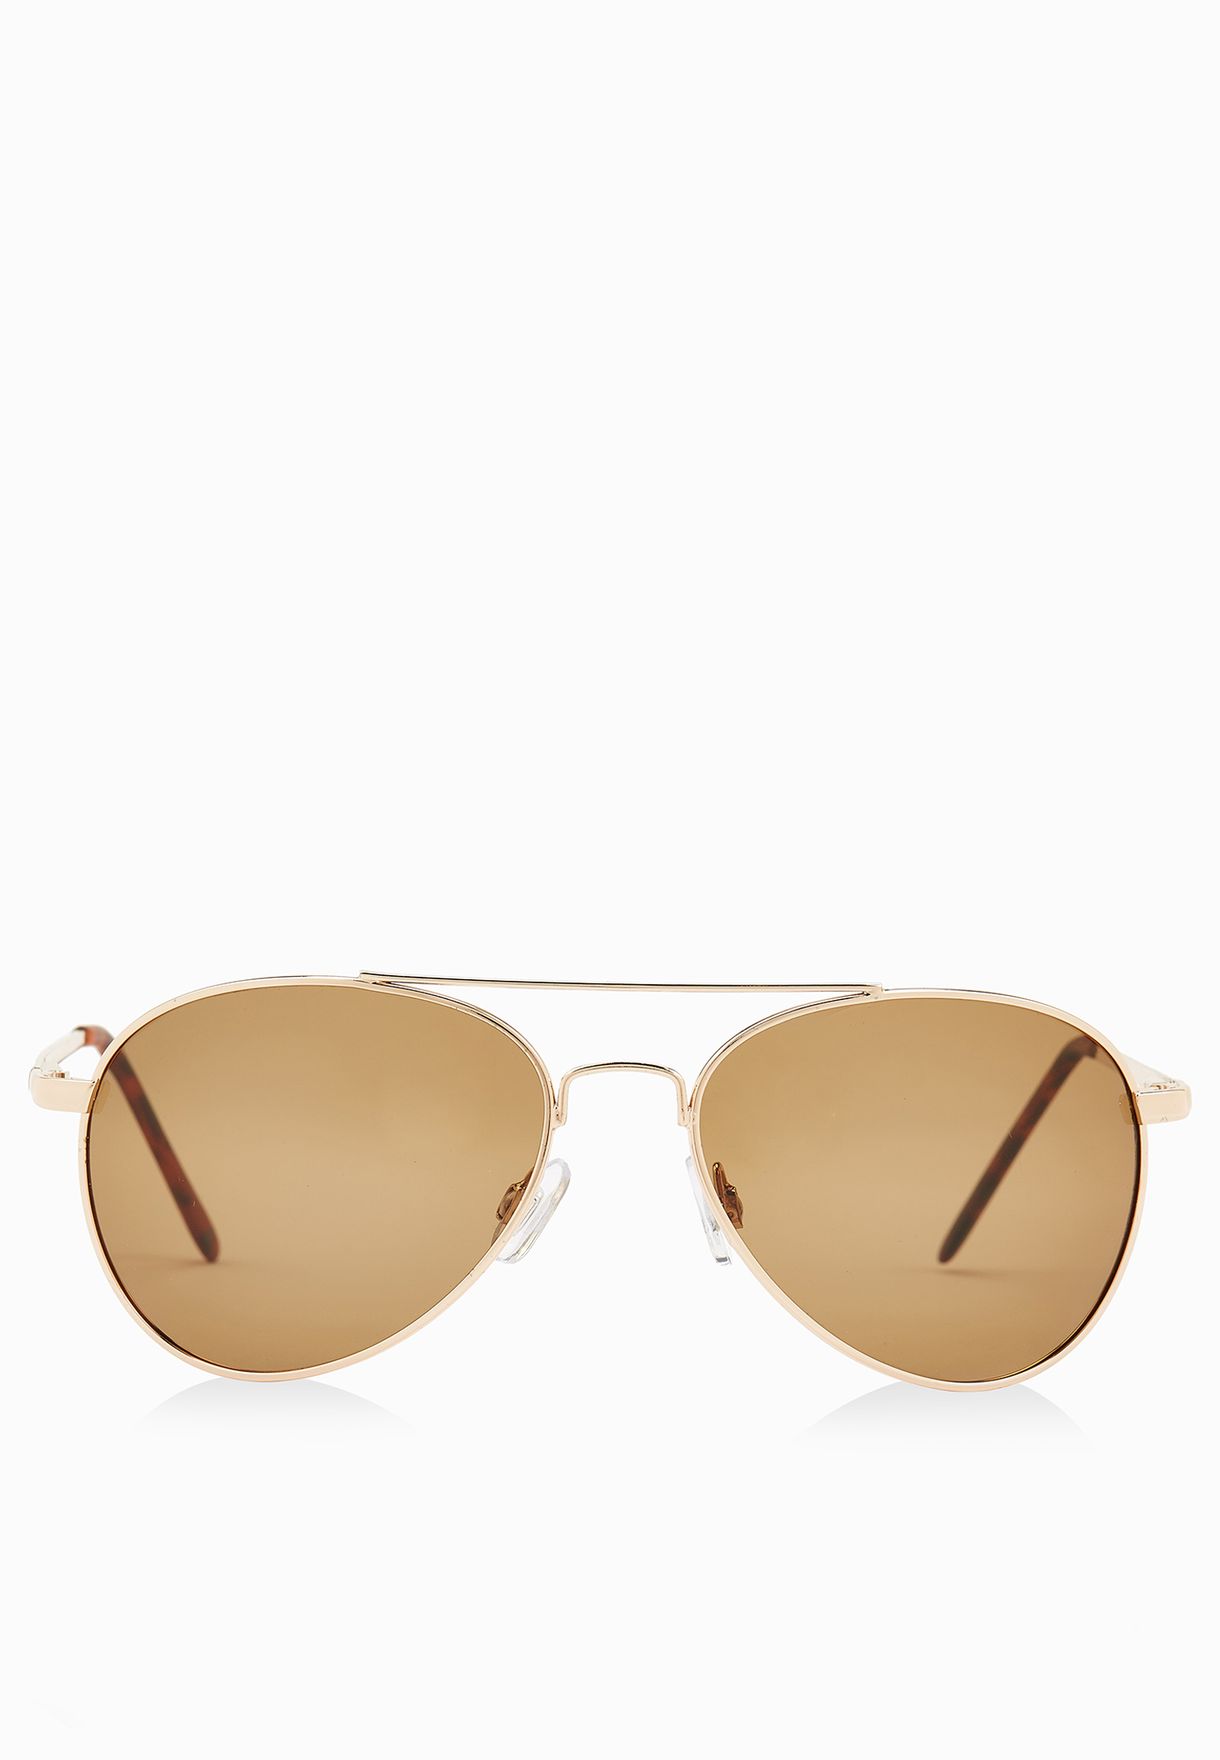 Eyelevel Milano Aviators Polarized Sunglasses Sliver or Gold 